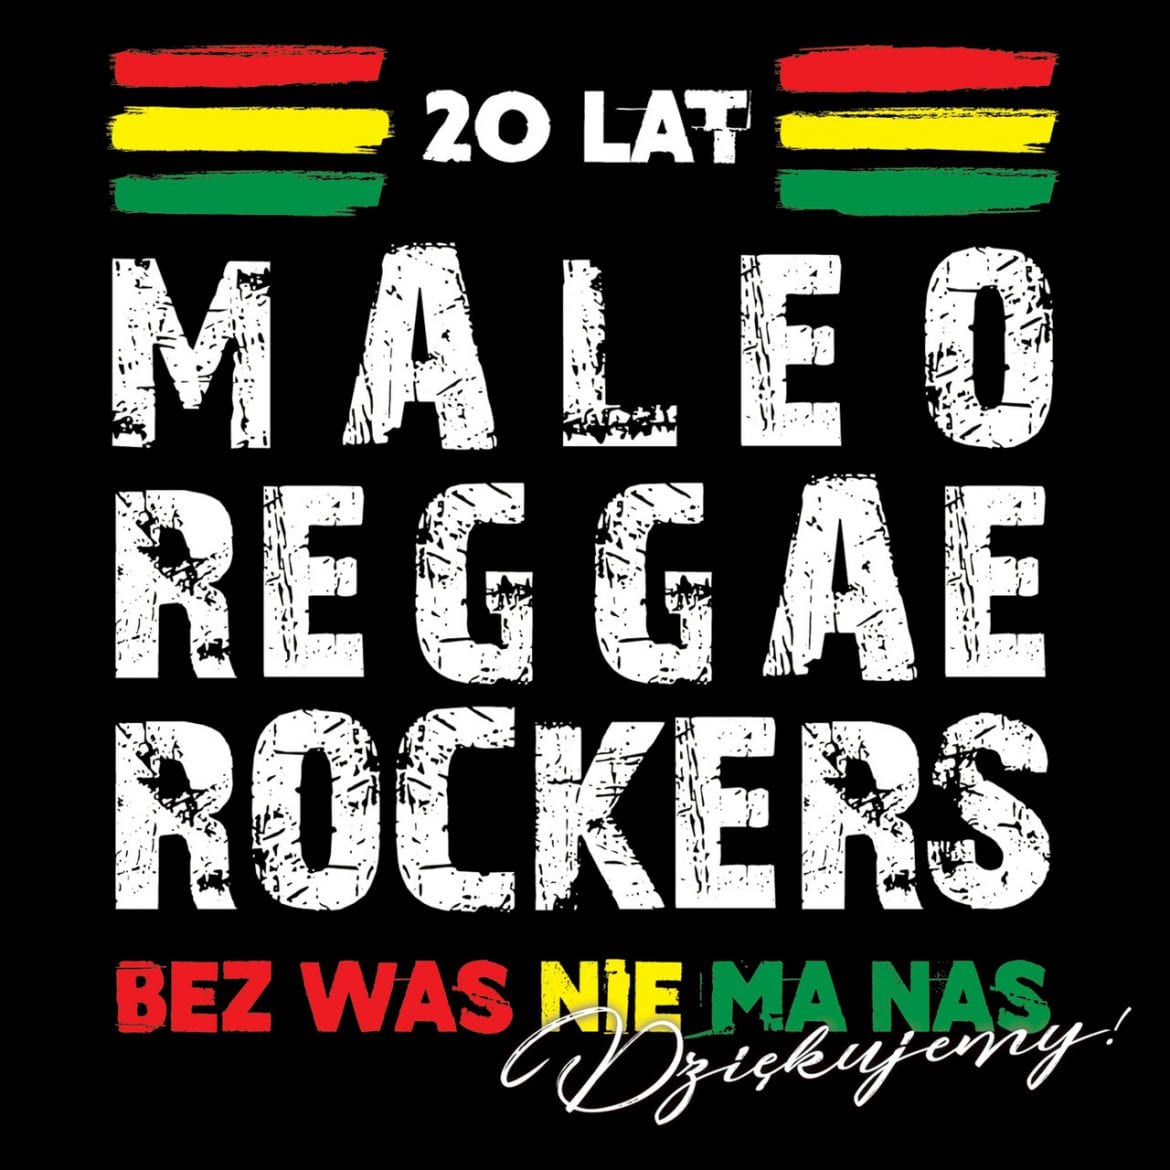 Maleo Reggae Rockers – „20 lat Maleo Reggae Rockers”